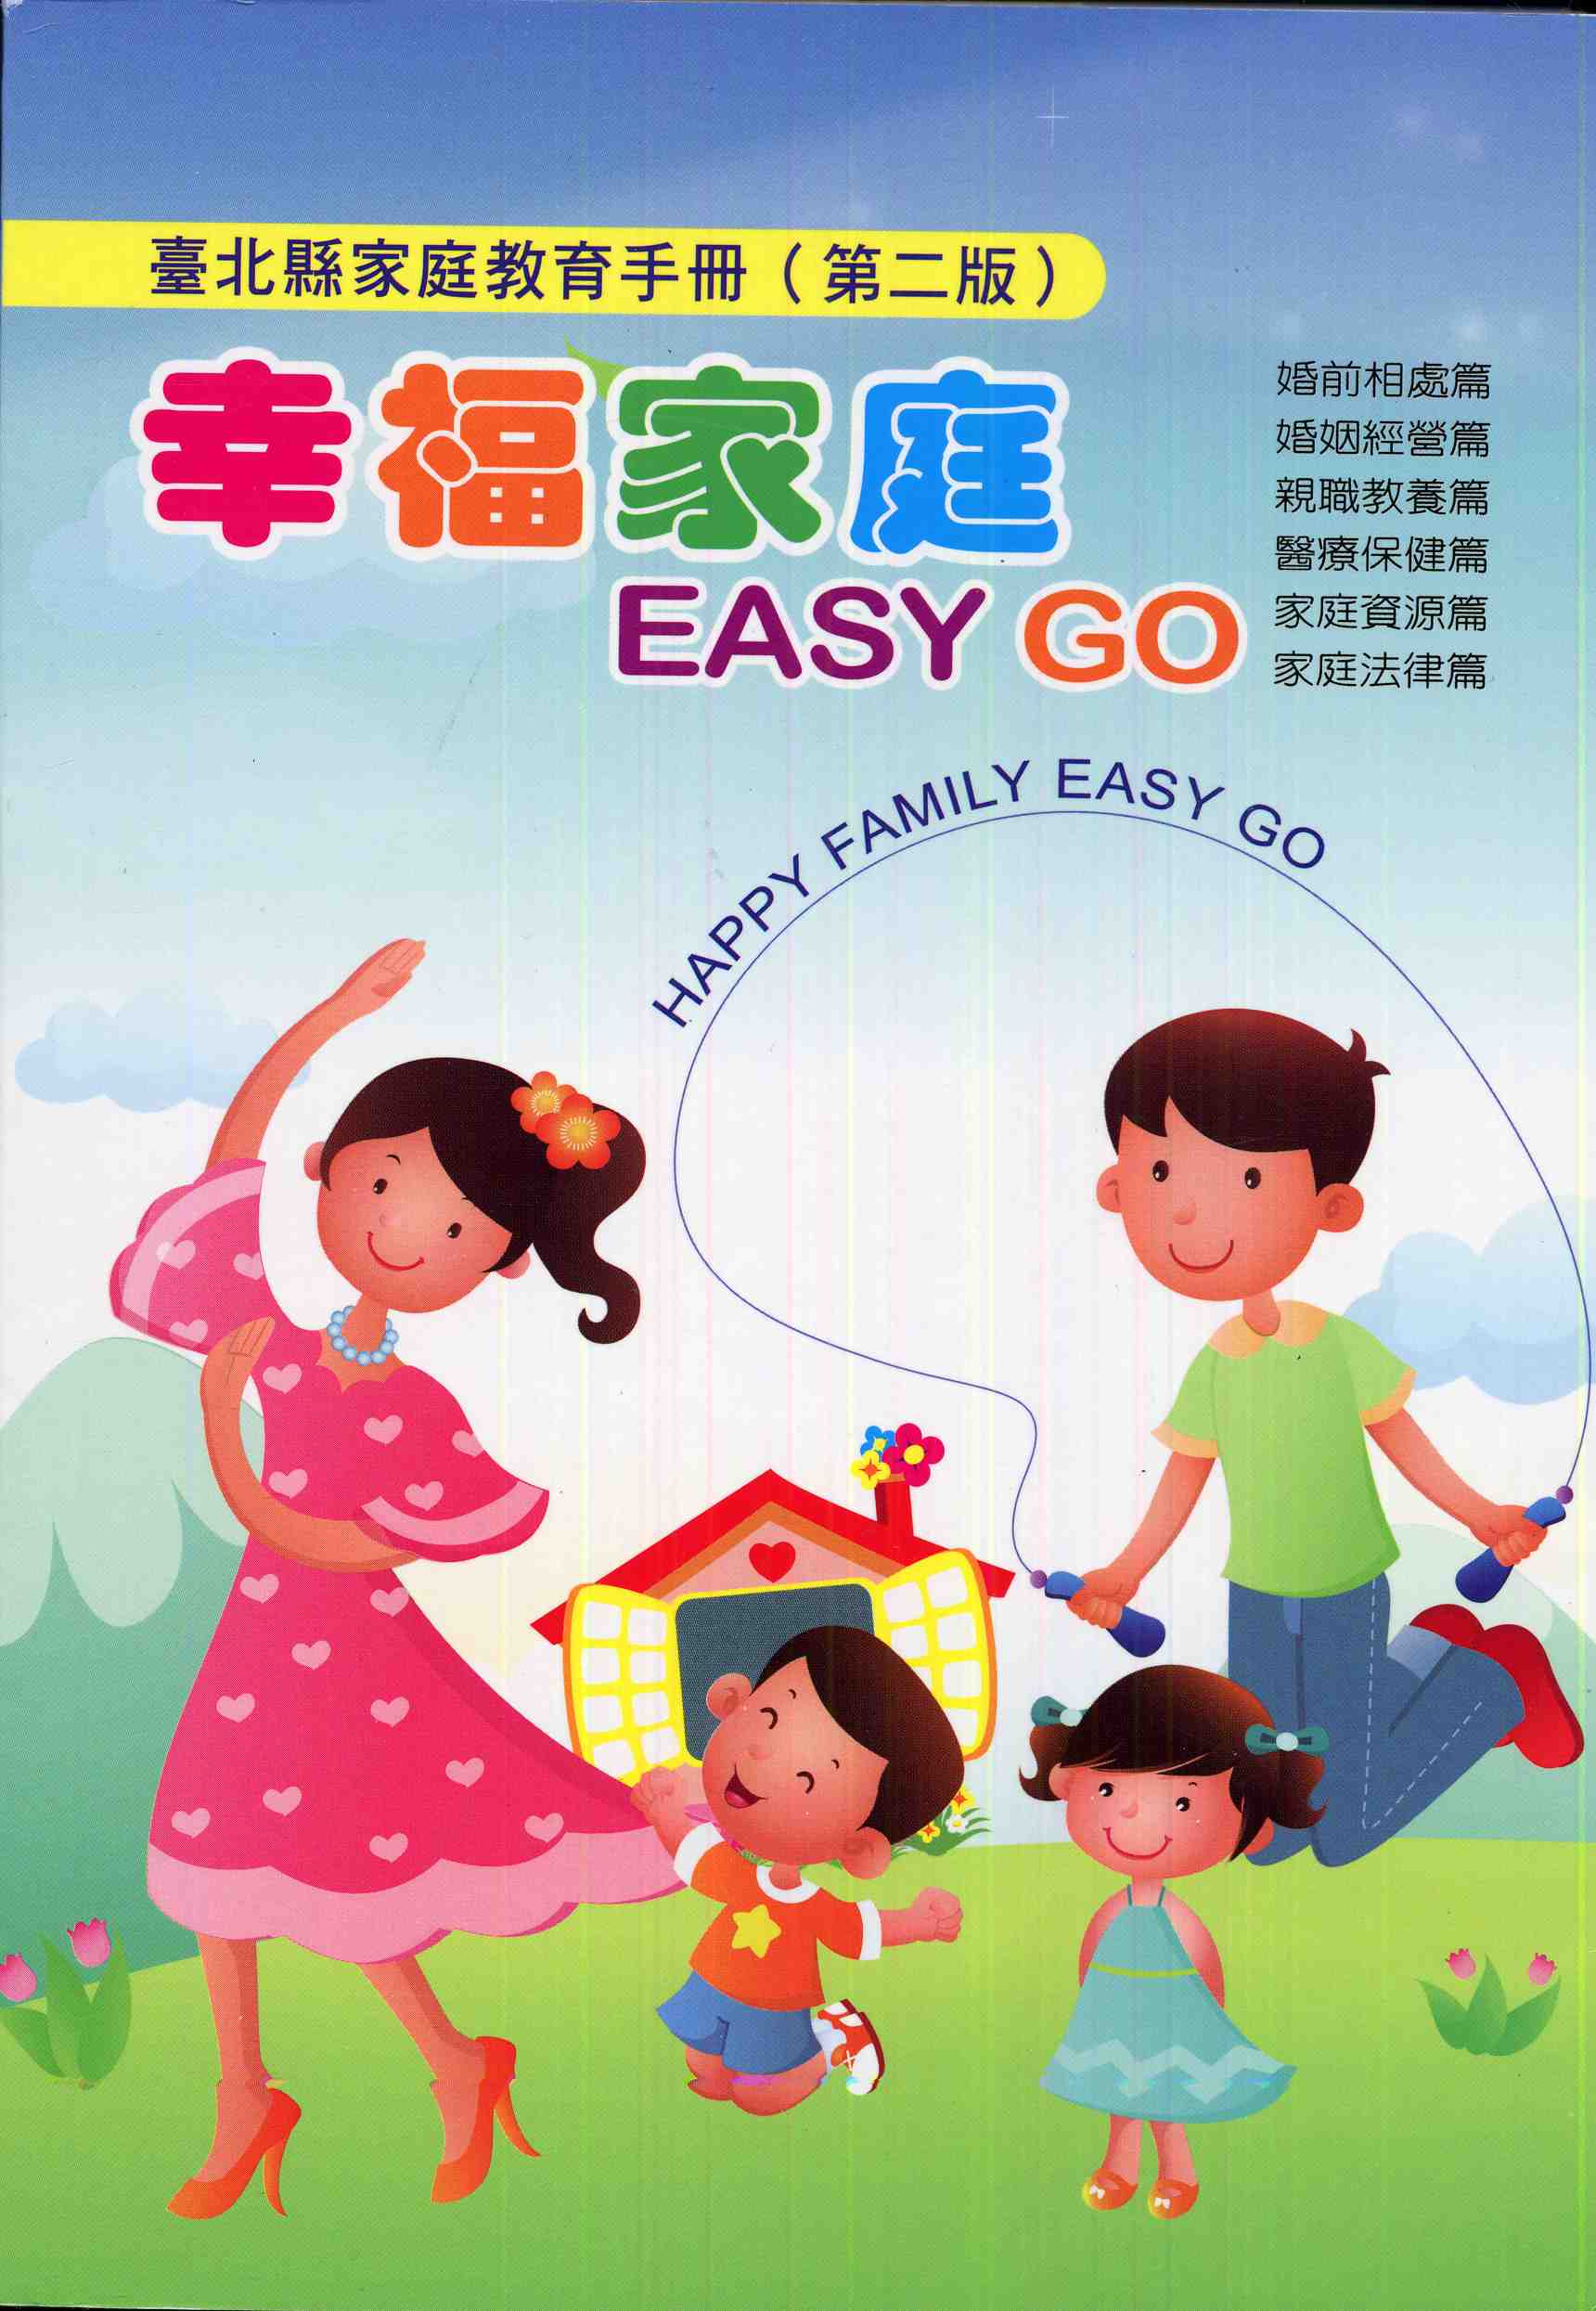 臺北縣家庭教育手冊-幸福家庭EASY GO